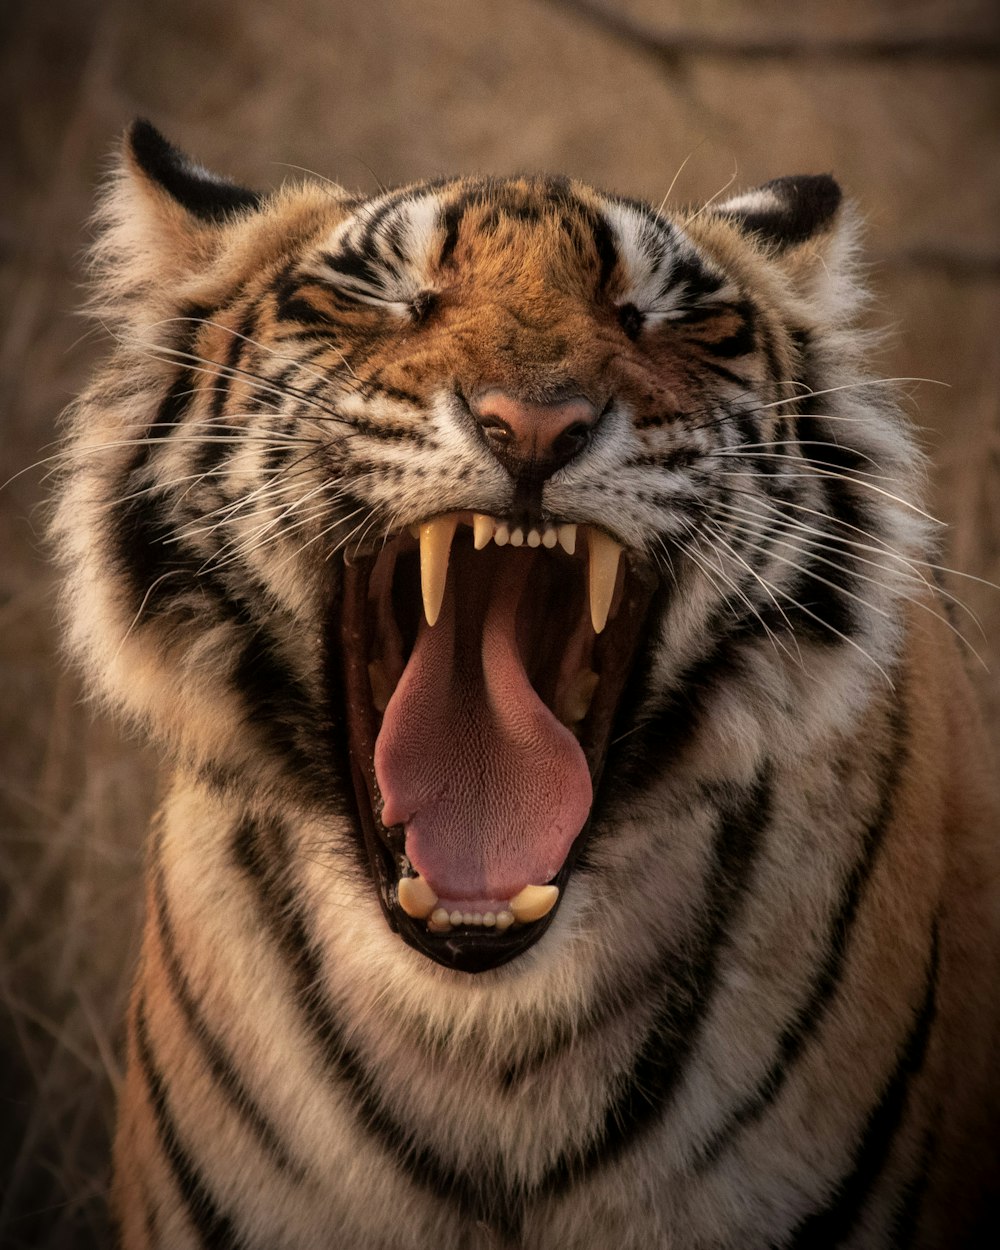 Brauner und schwarzer Tiger mit Zunge